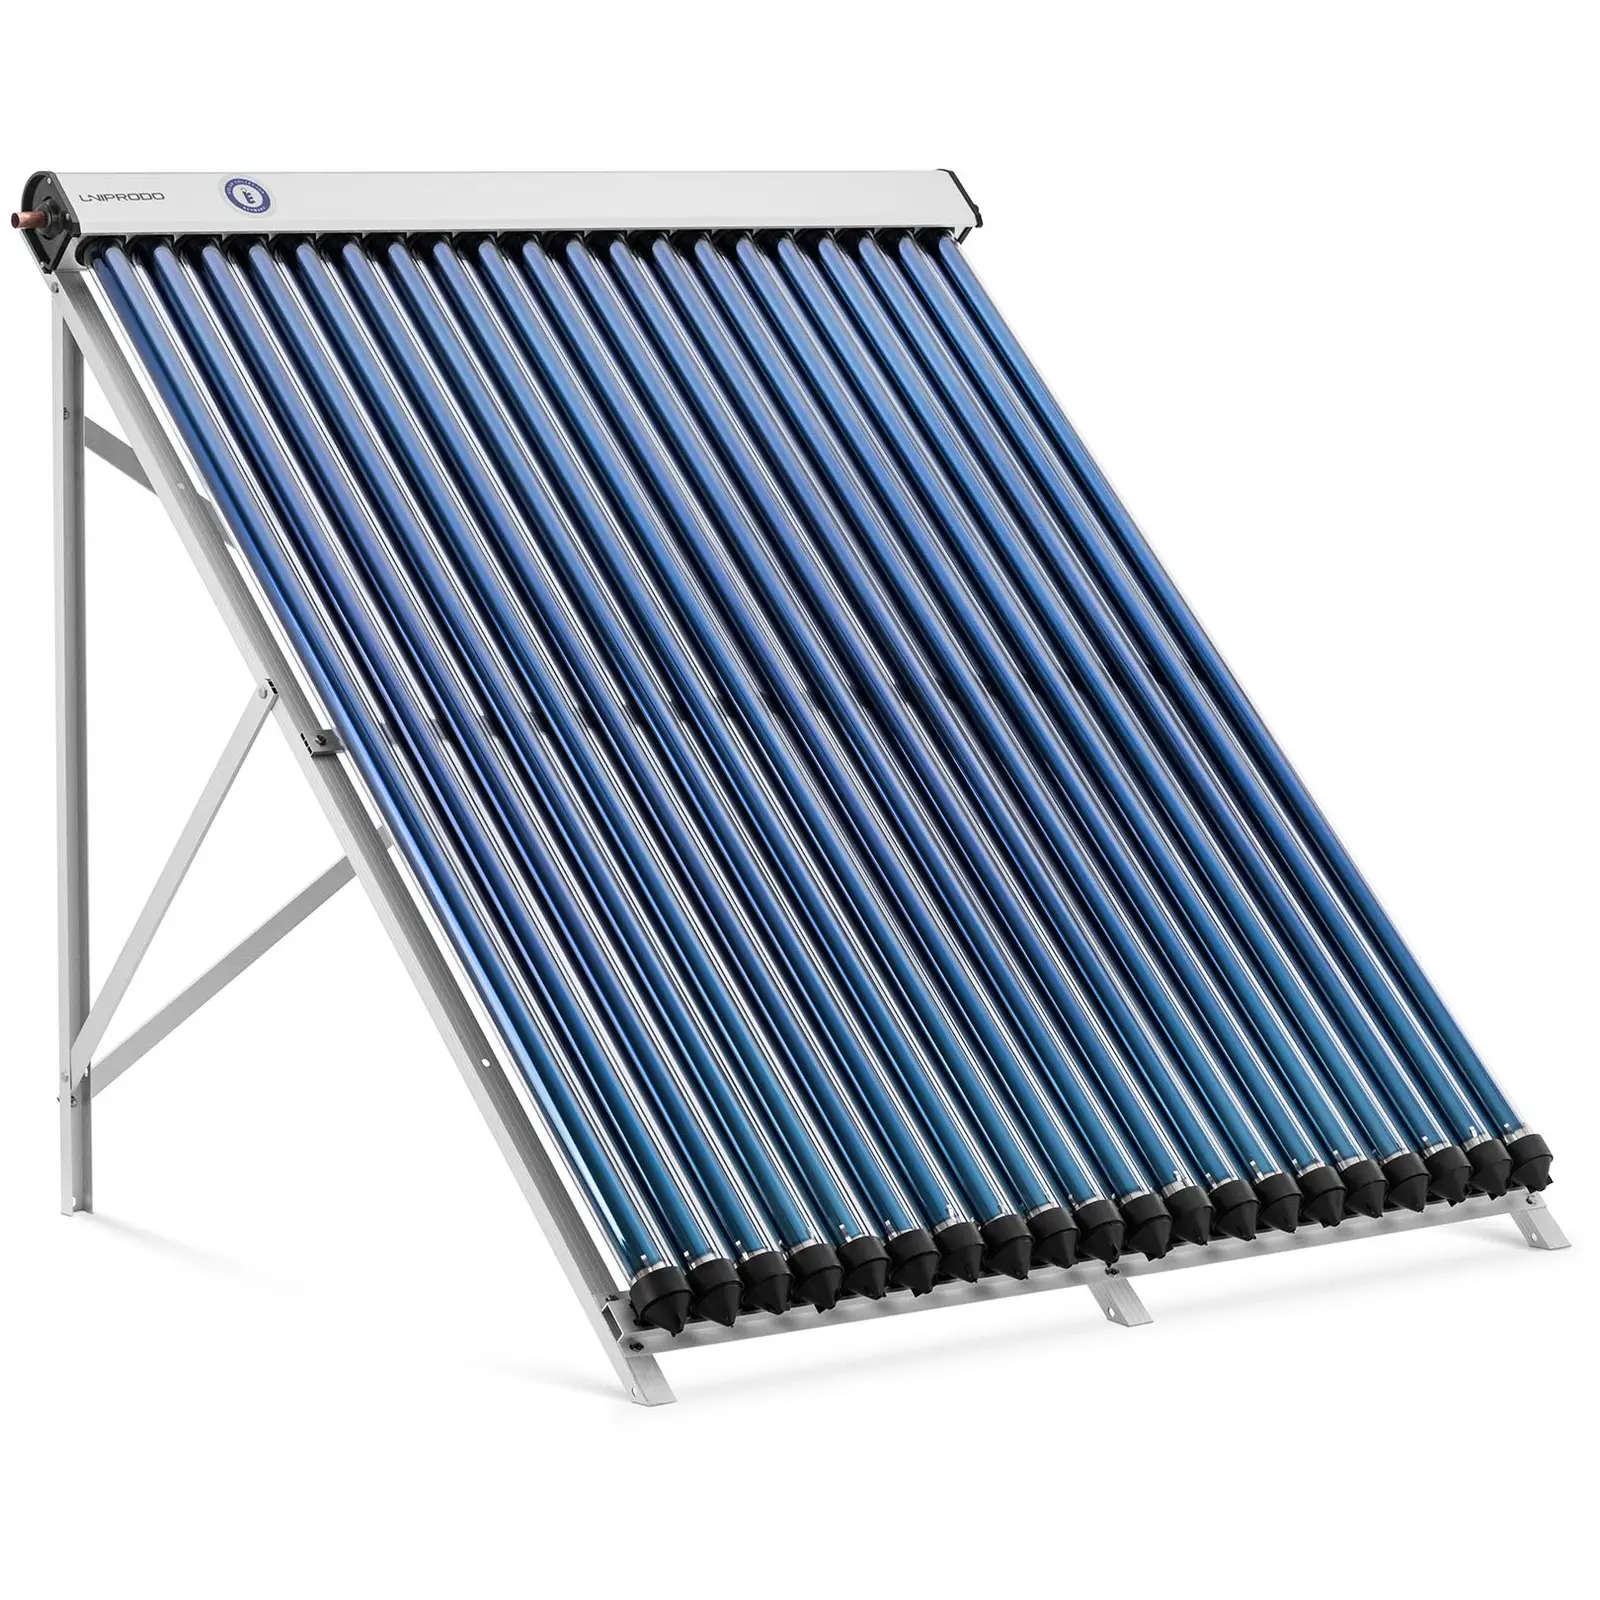 Evakuert Solar Tube Collector - Solvarme - 20 Rør - 160 til 200 L - 1.6 m² - -45 - 90 °C